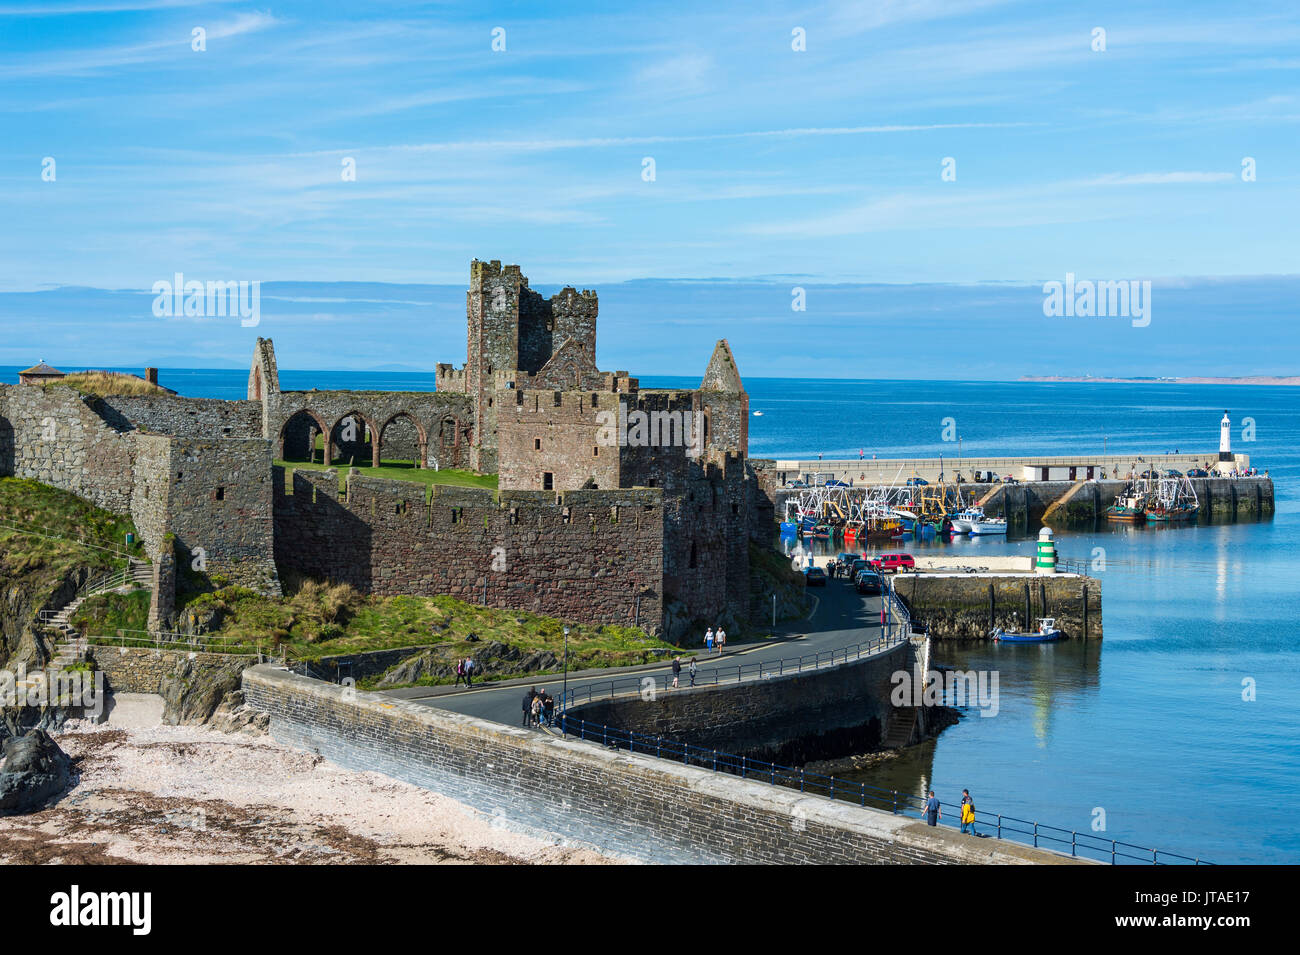 Peel castle, Peel, Isle of Man, United Kingdom, Europe Stock Photo